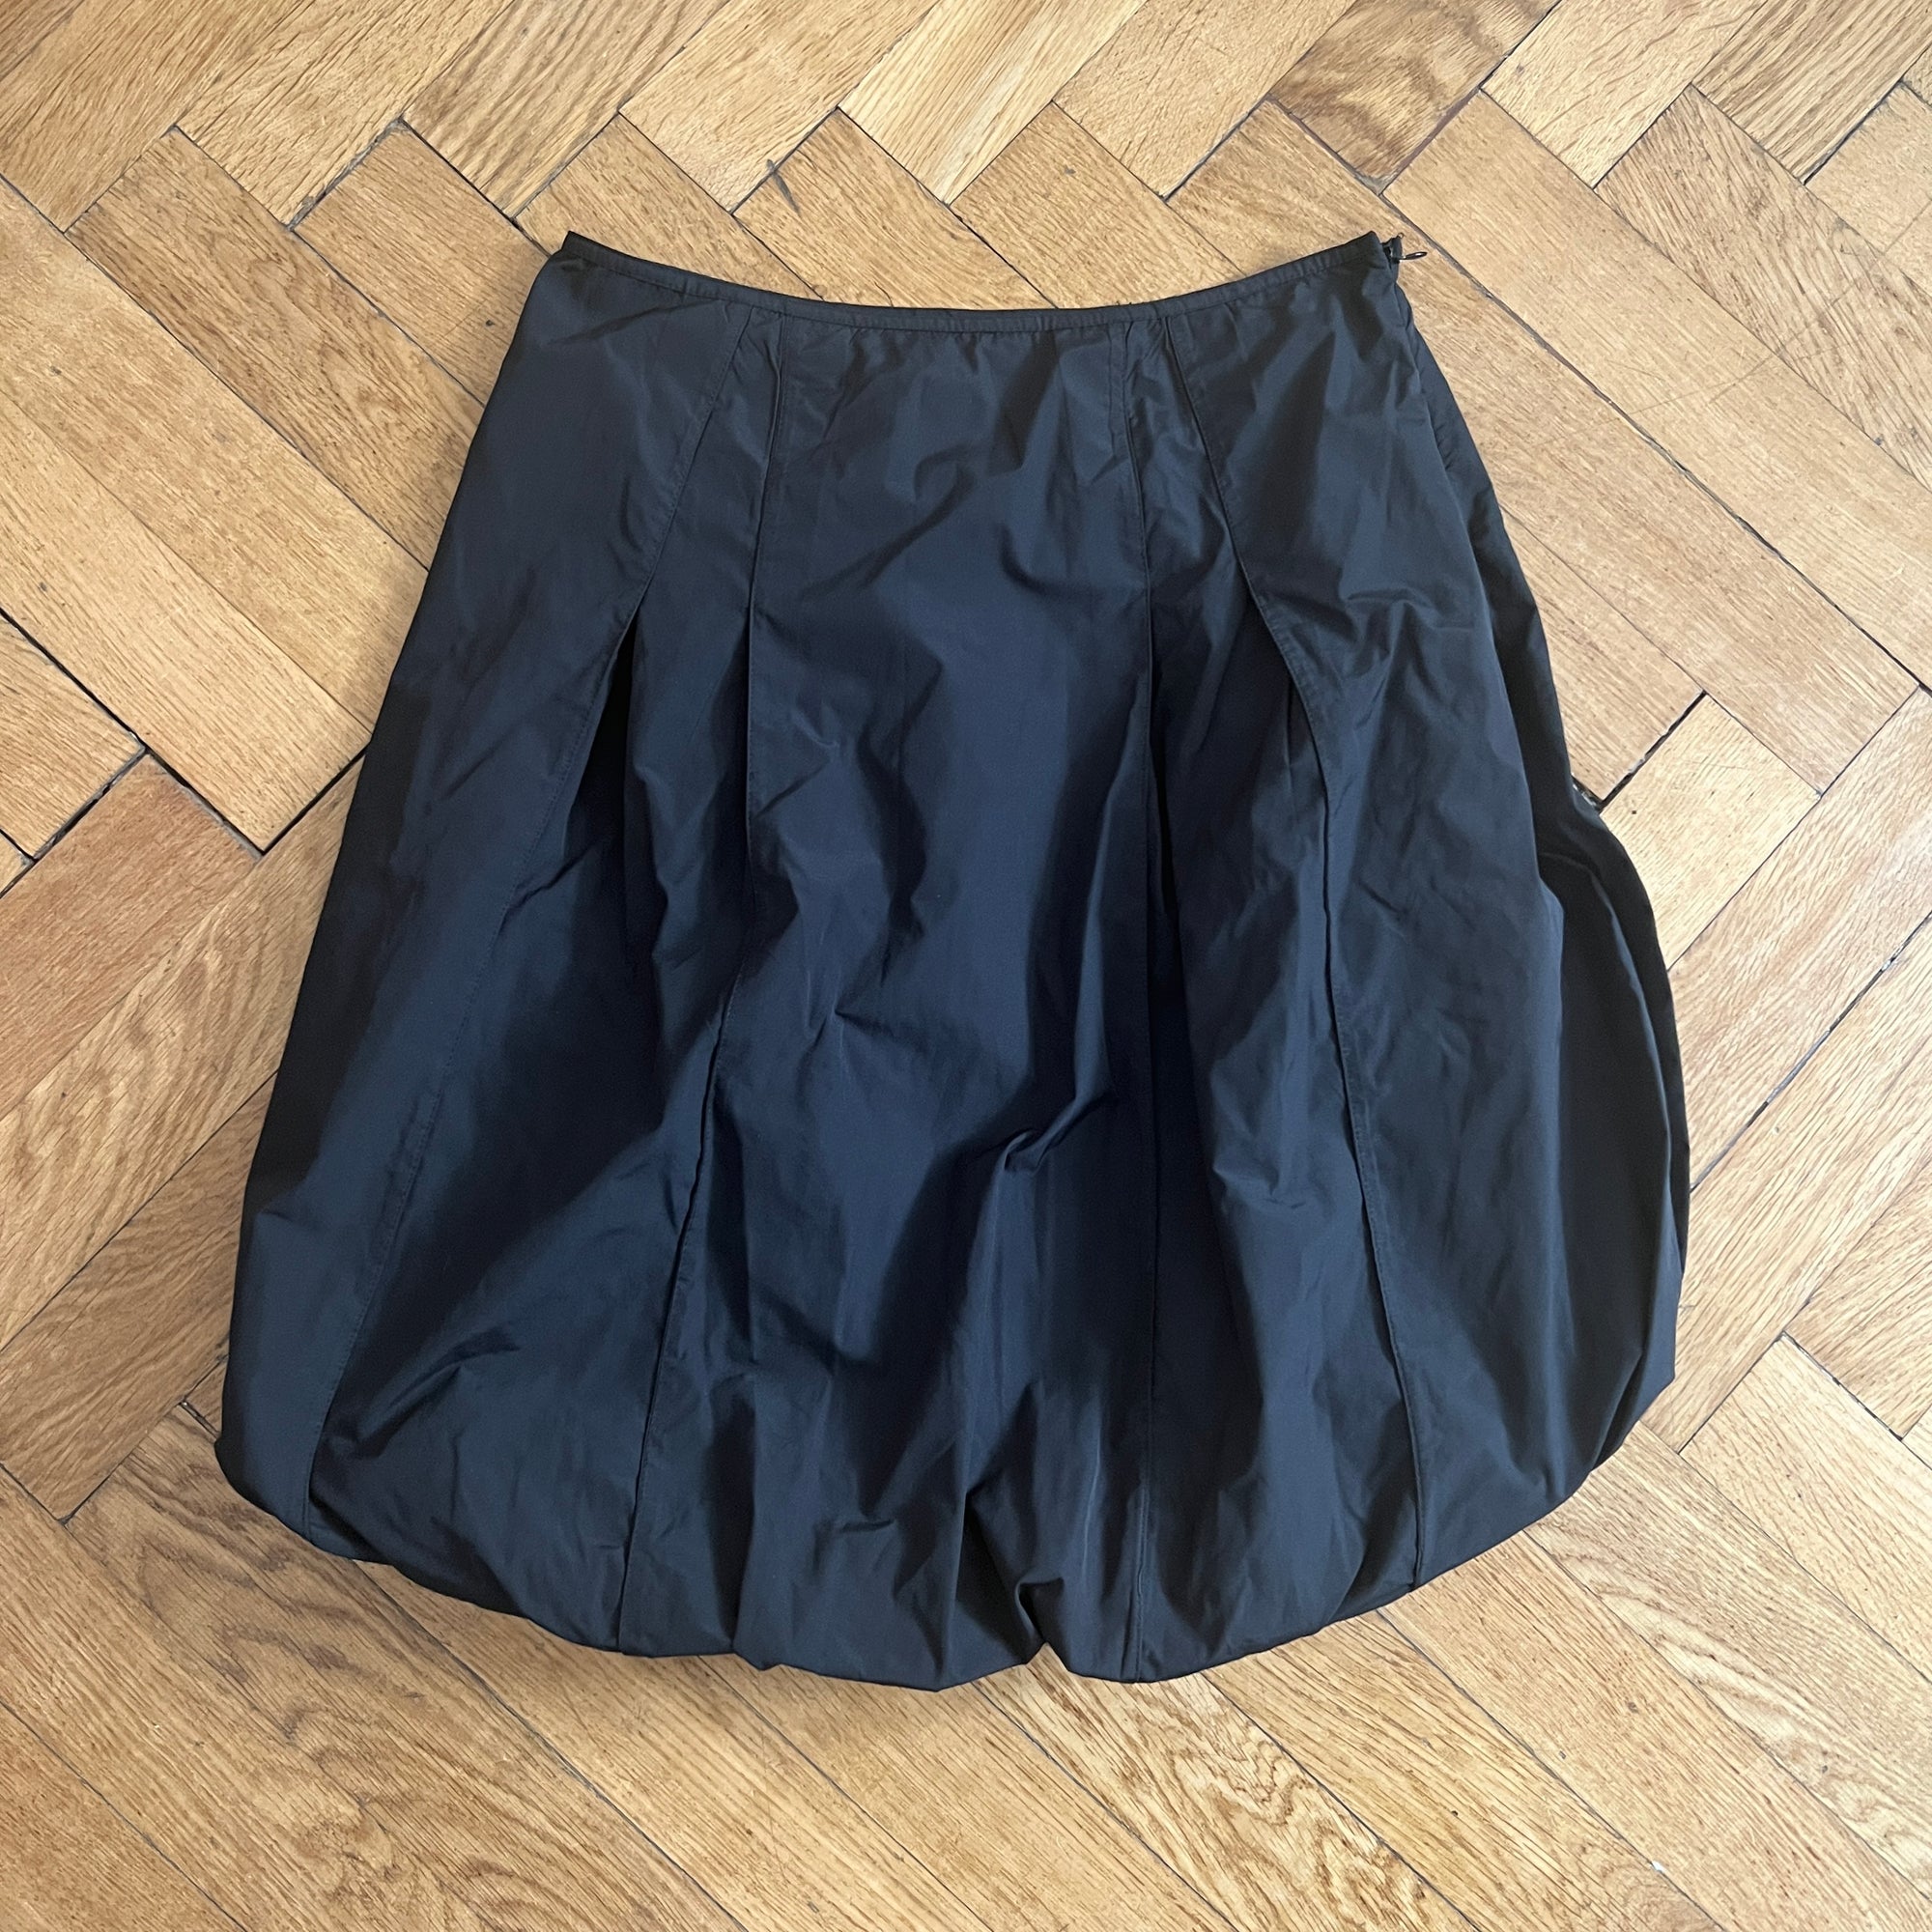 Alexander McQueen 90s Black Balloon Skirt